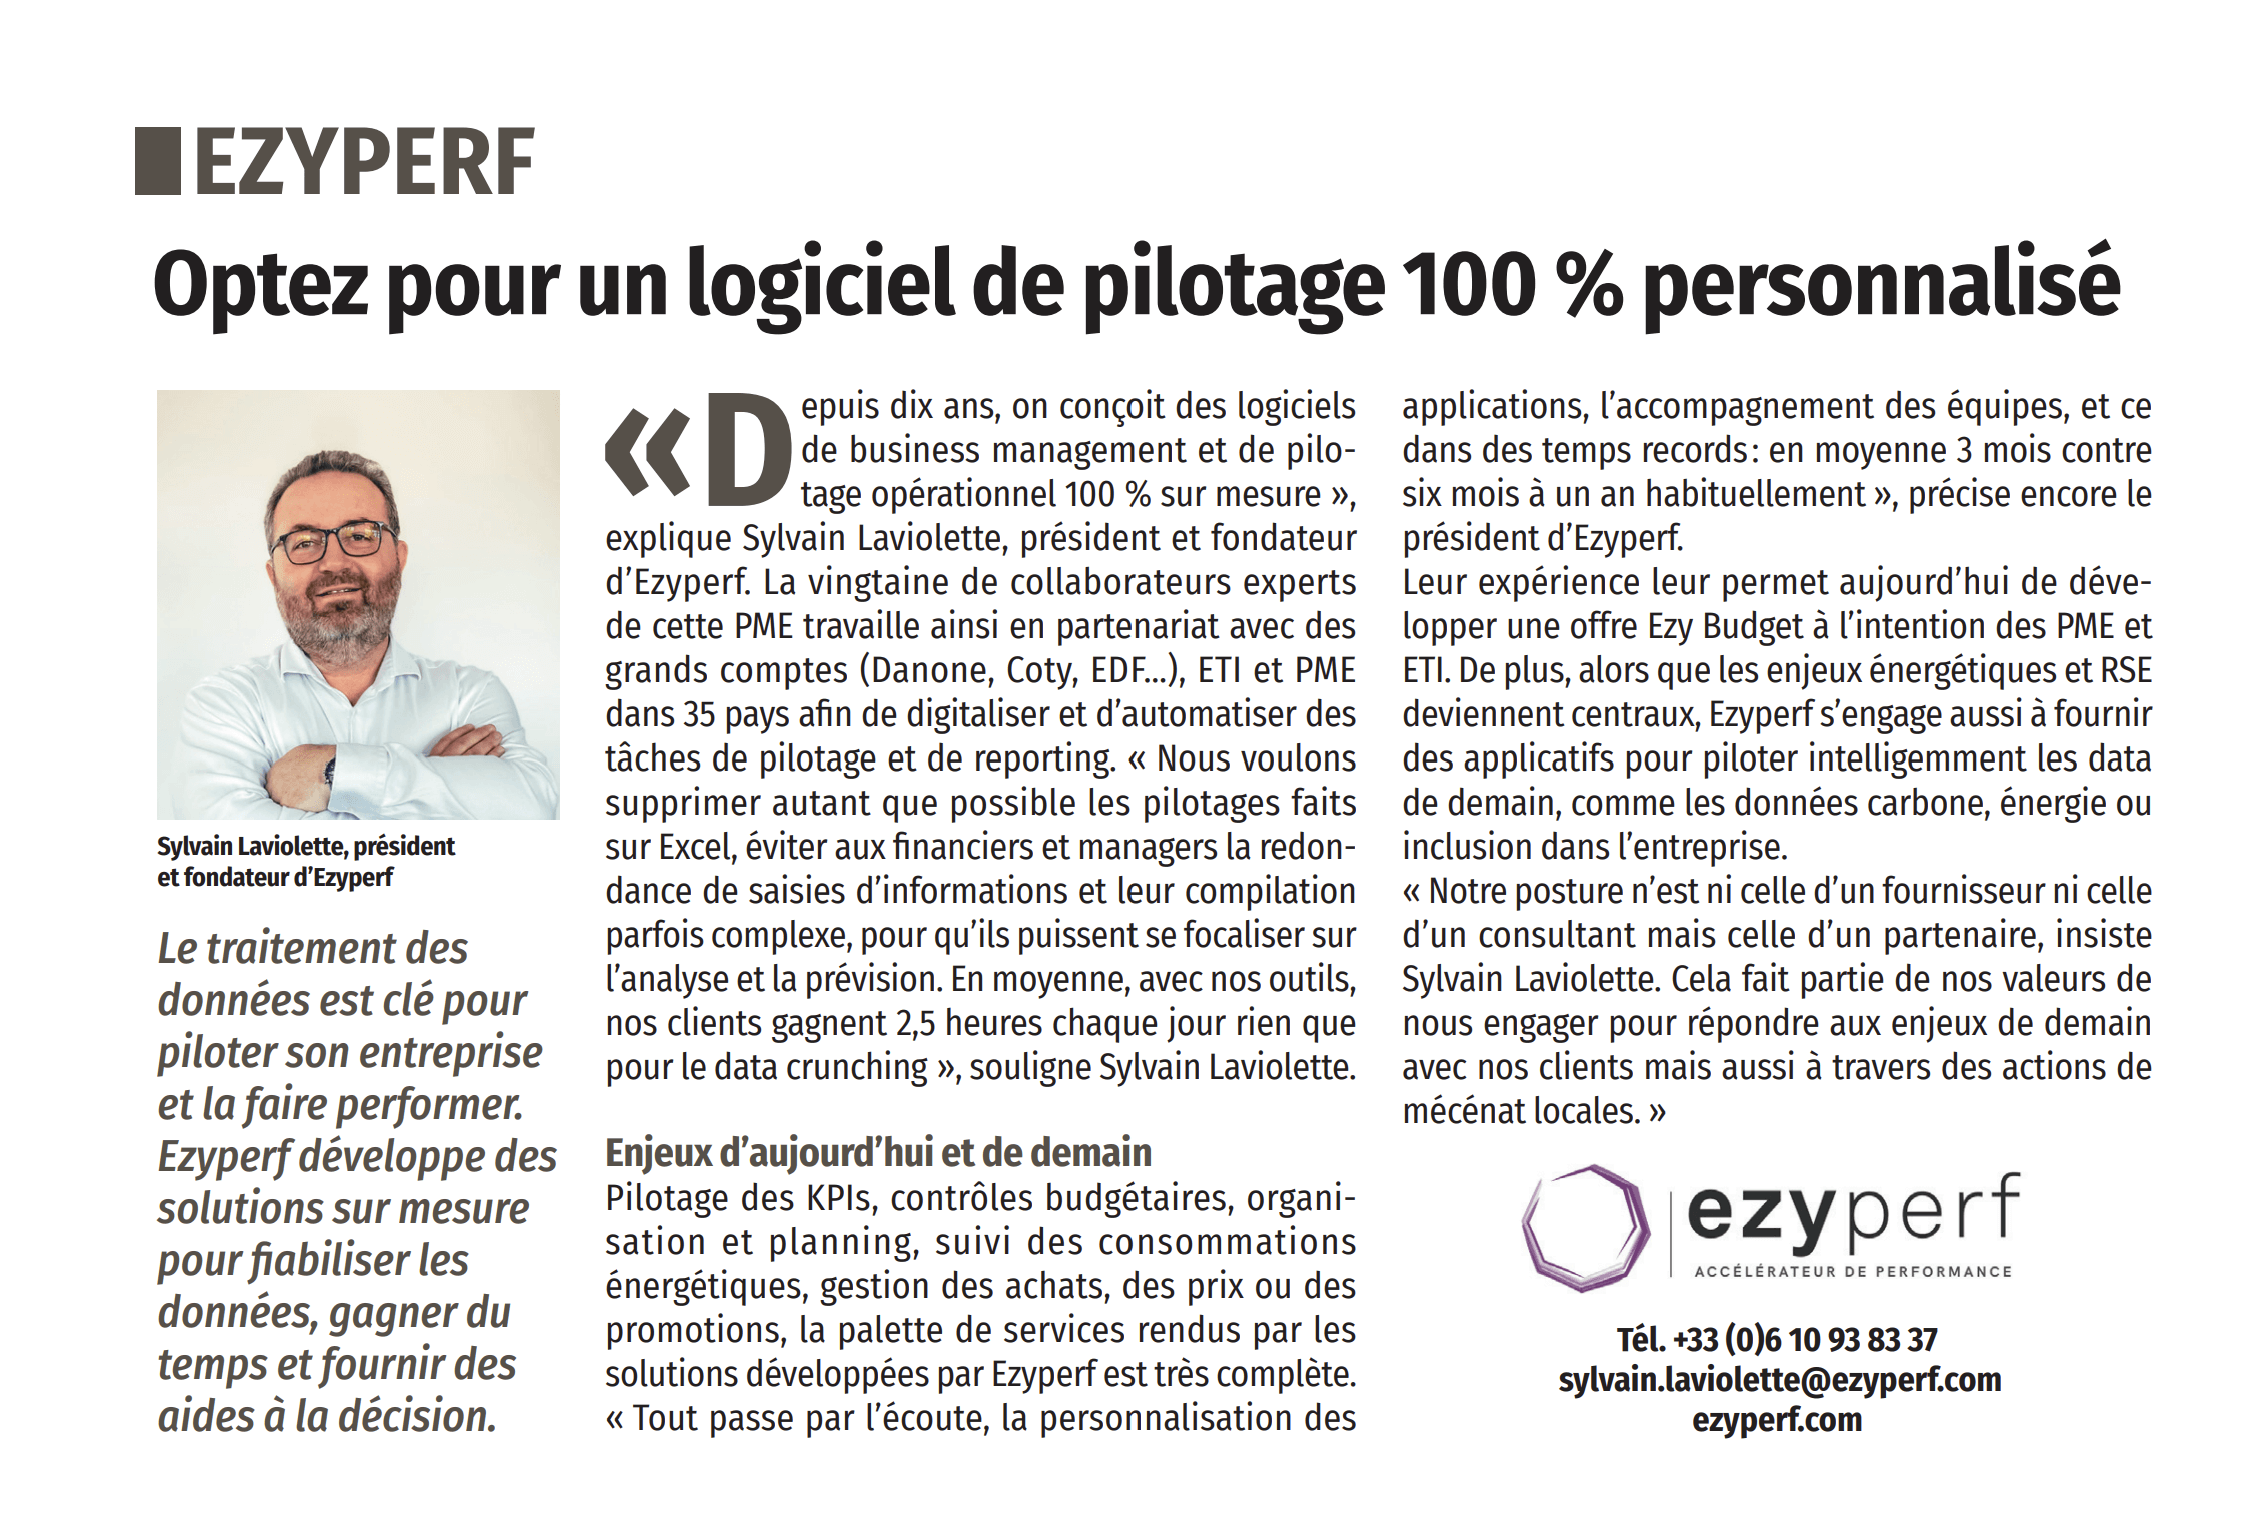 Ezyperf dans le Figaro